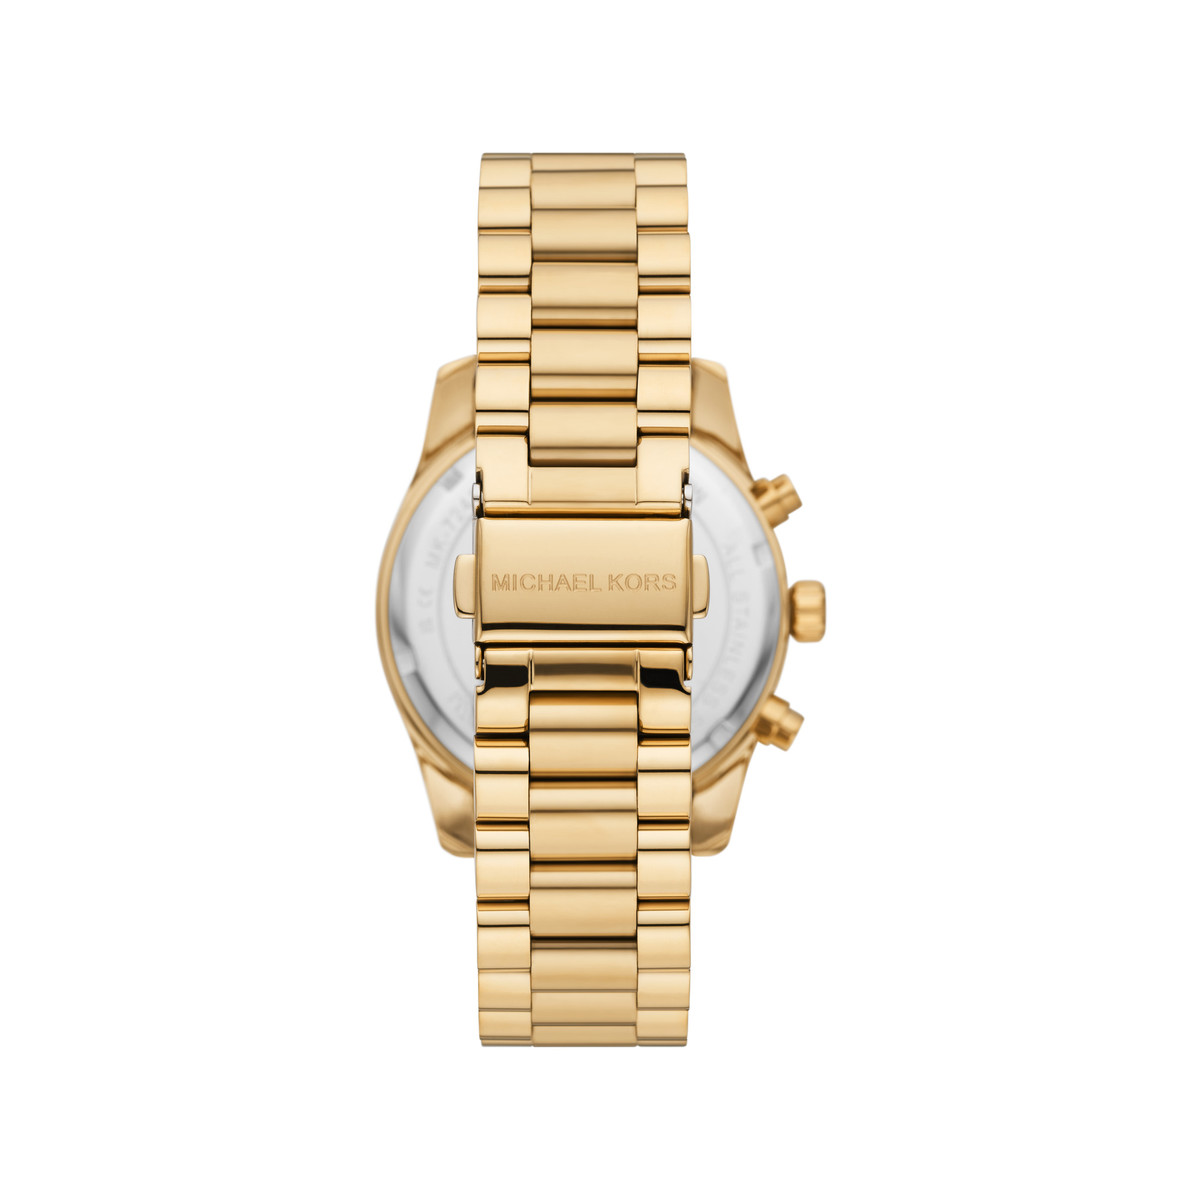 Montre MICHAEL KORS femme chronographe bracelet acier doré jaune - vue 3